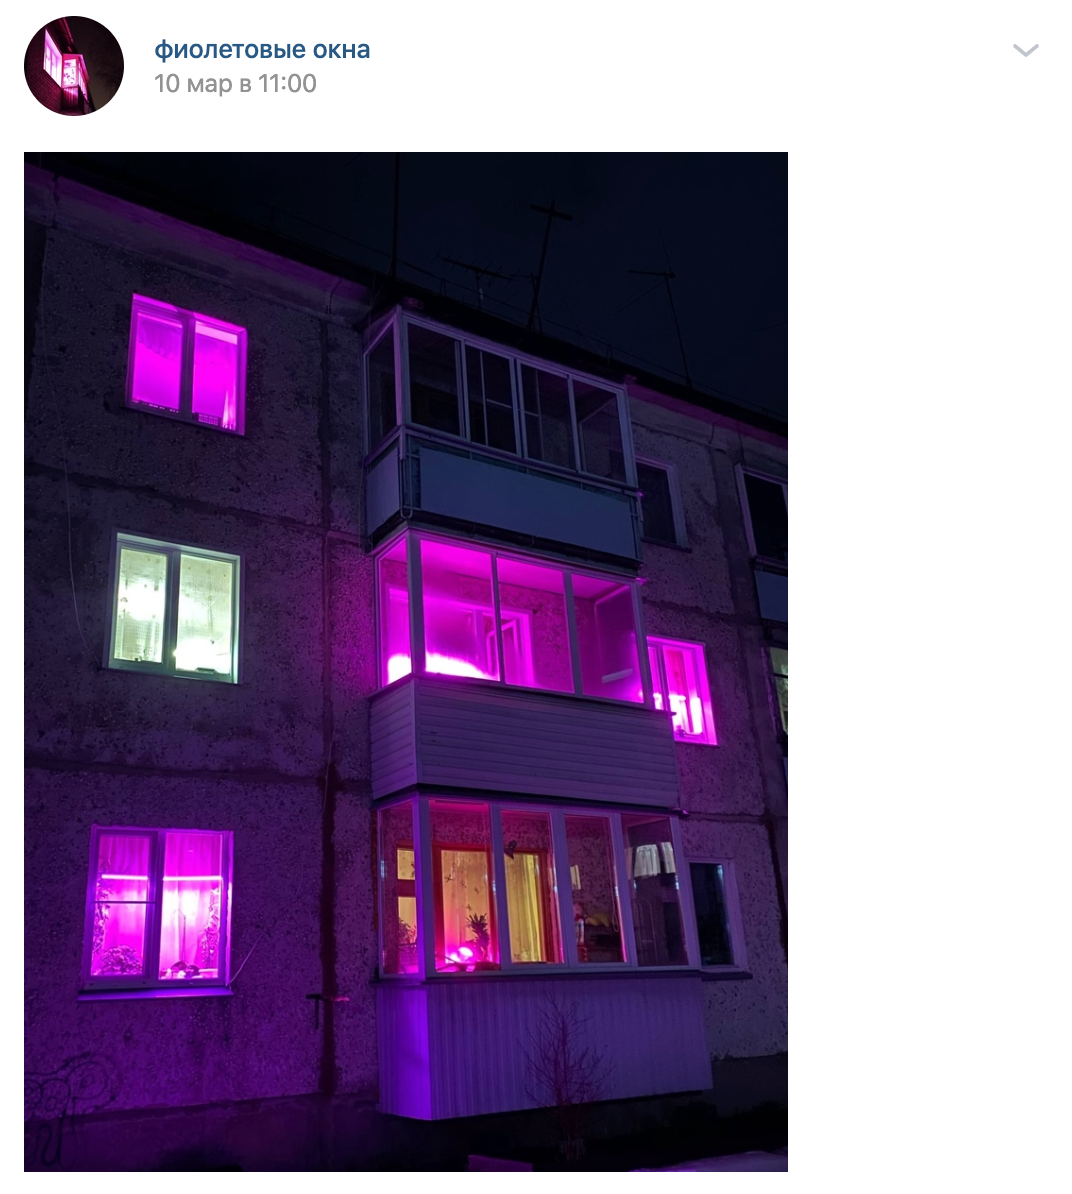 Розовый свет в окнах. Фиолетовые окна. Розовый свет в окнах жилых домов. Фиолетовые окна в домах.